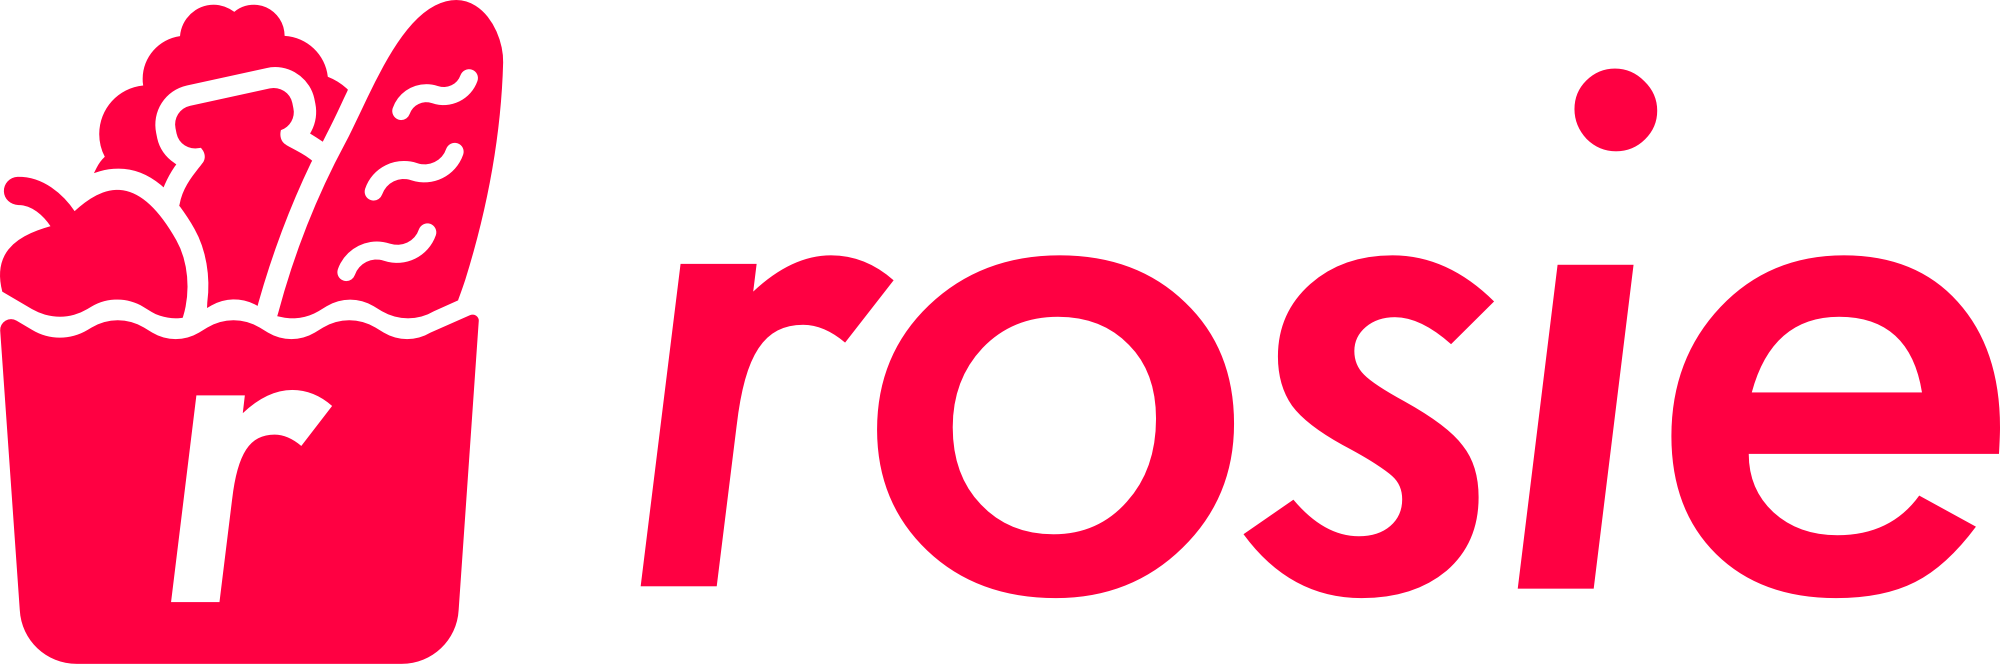 Rosie logo in red